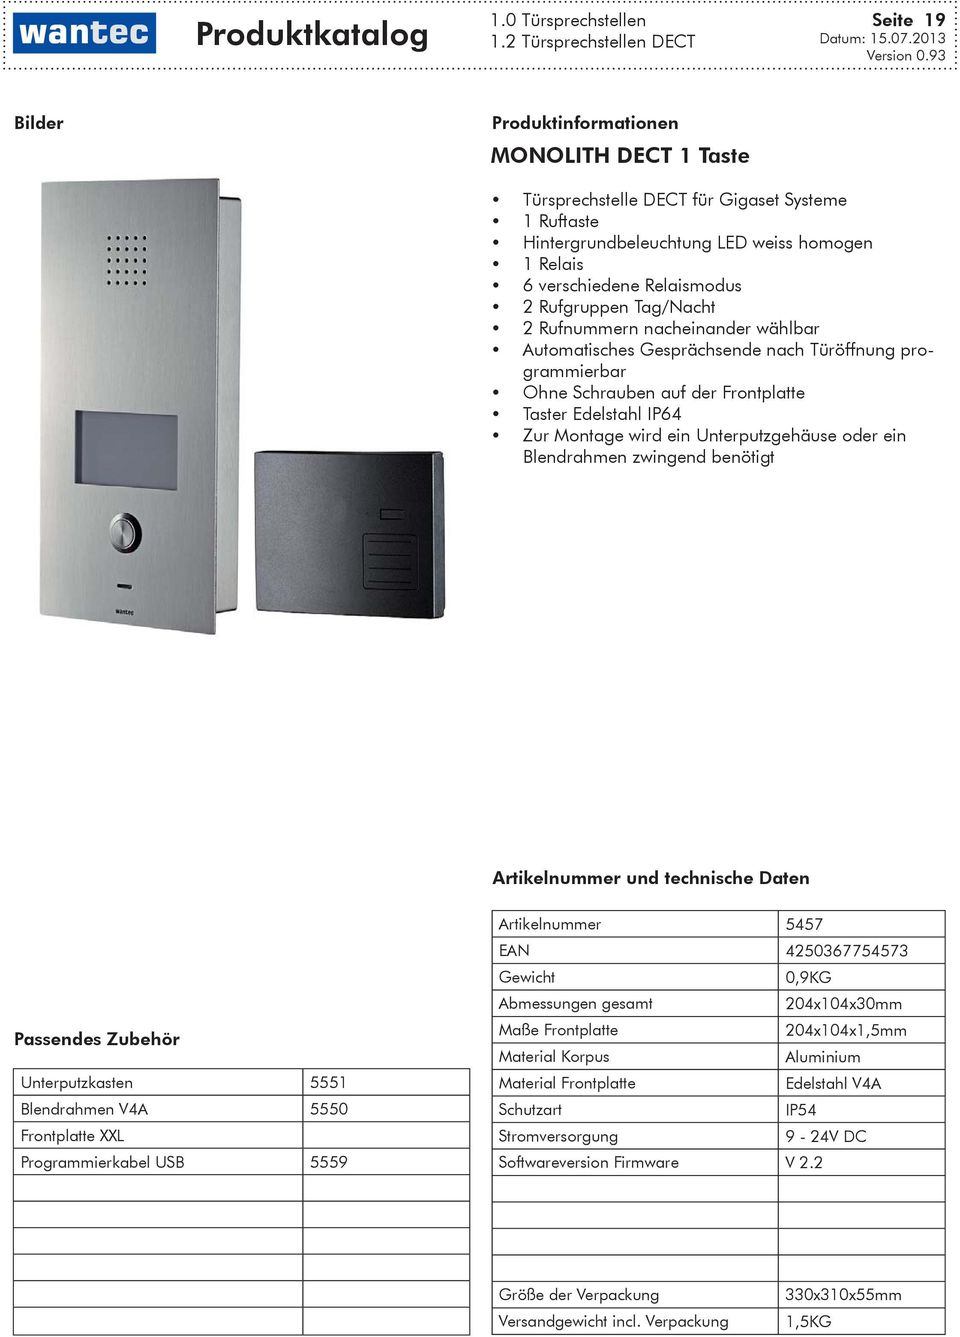 Frontplatte Taster Edelstahl IP64 Zur Montage wird ein Unterputzgehäuse oder ein Blendrahmen zwingend benötigt und technische Daten Unterputzkasten 5551